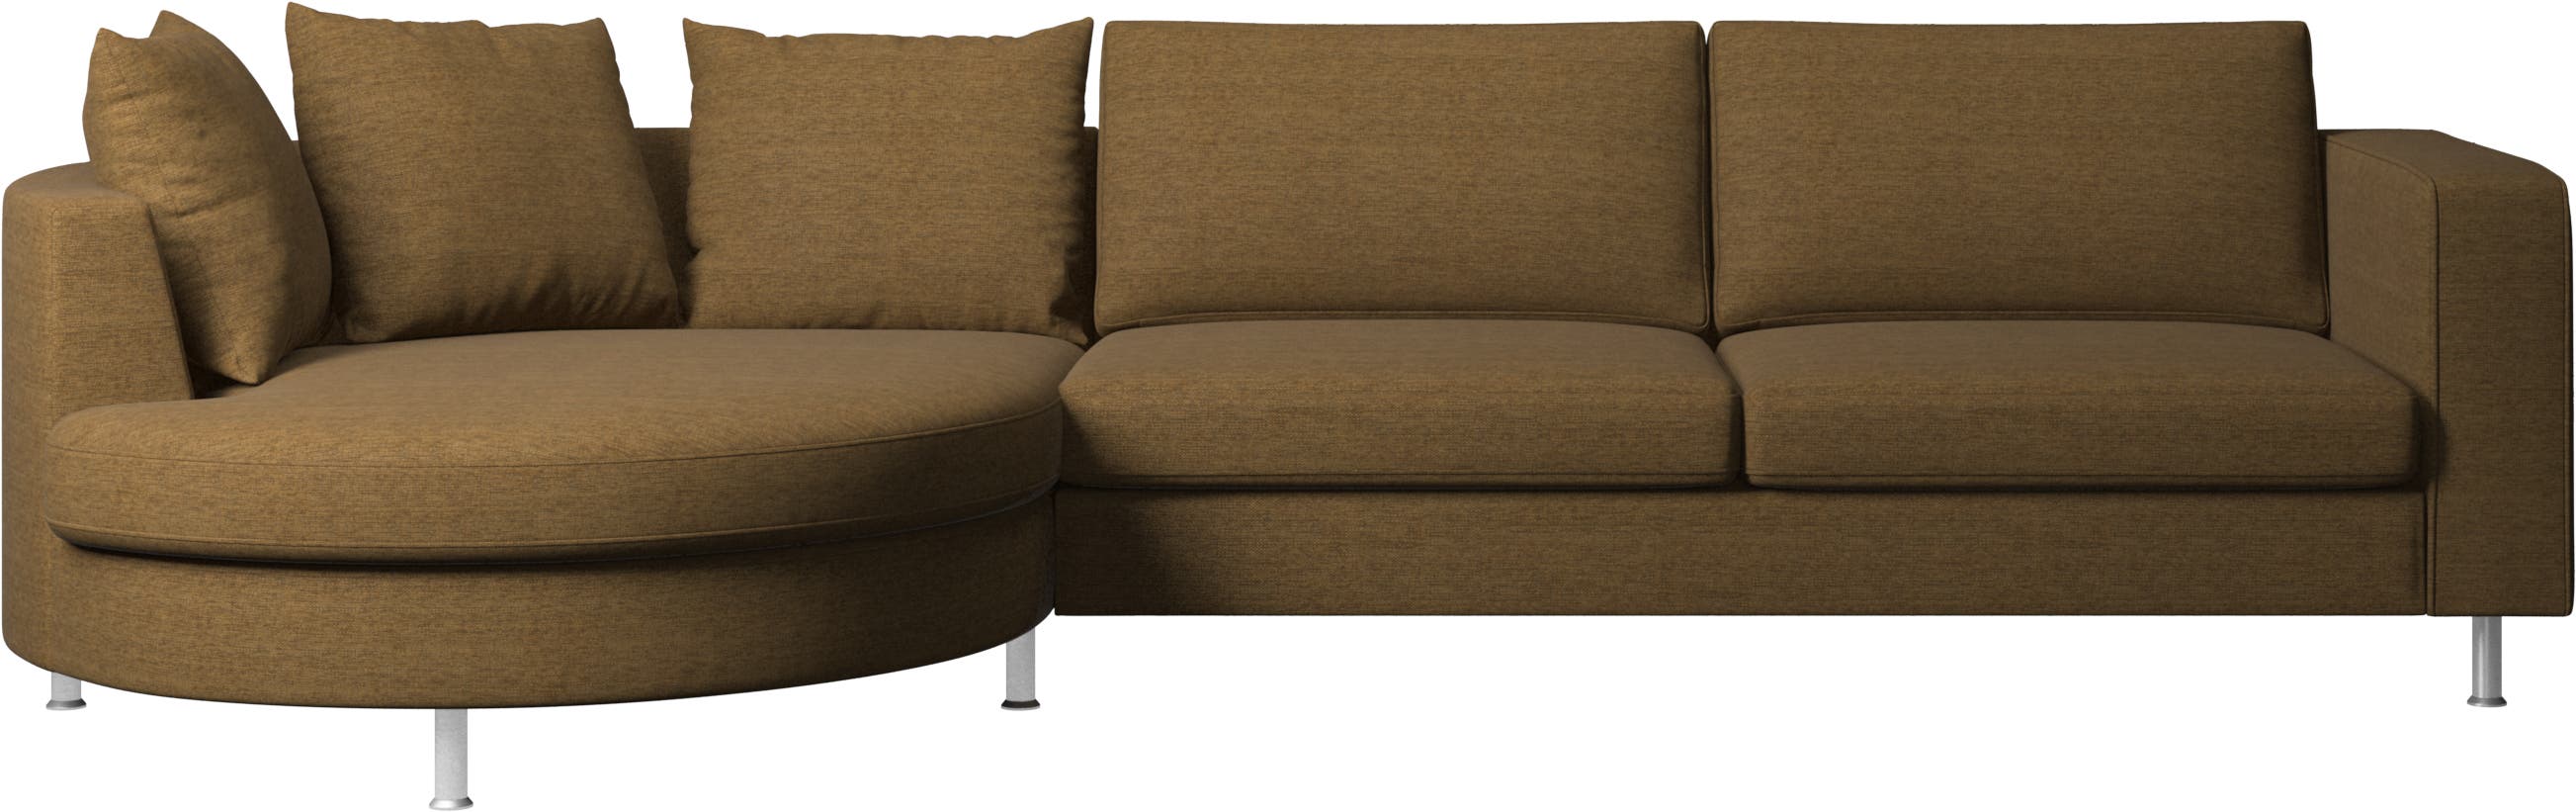 Indivi sofa med rundt hvilemodul